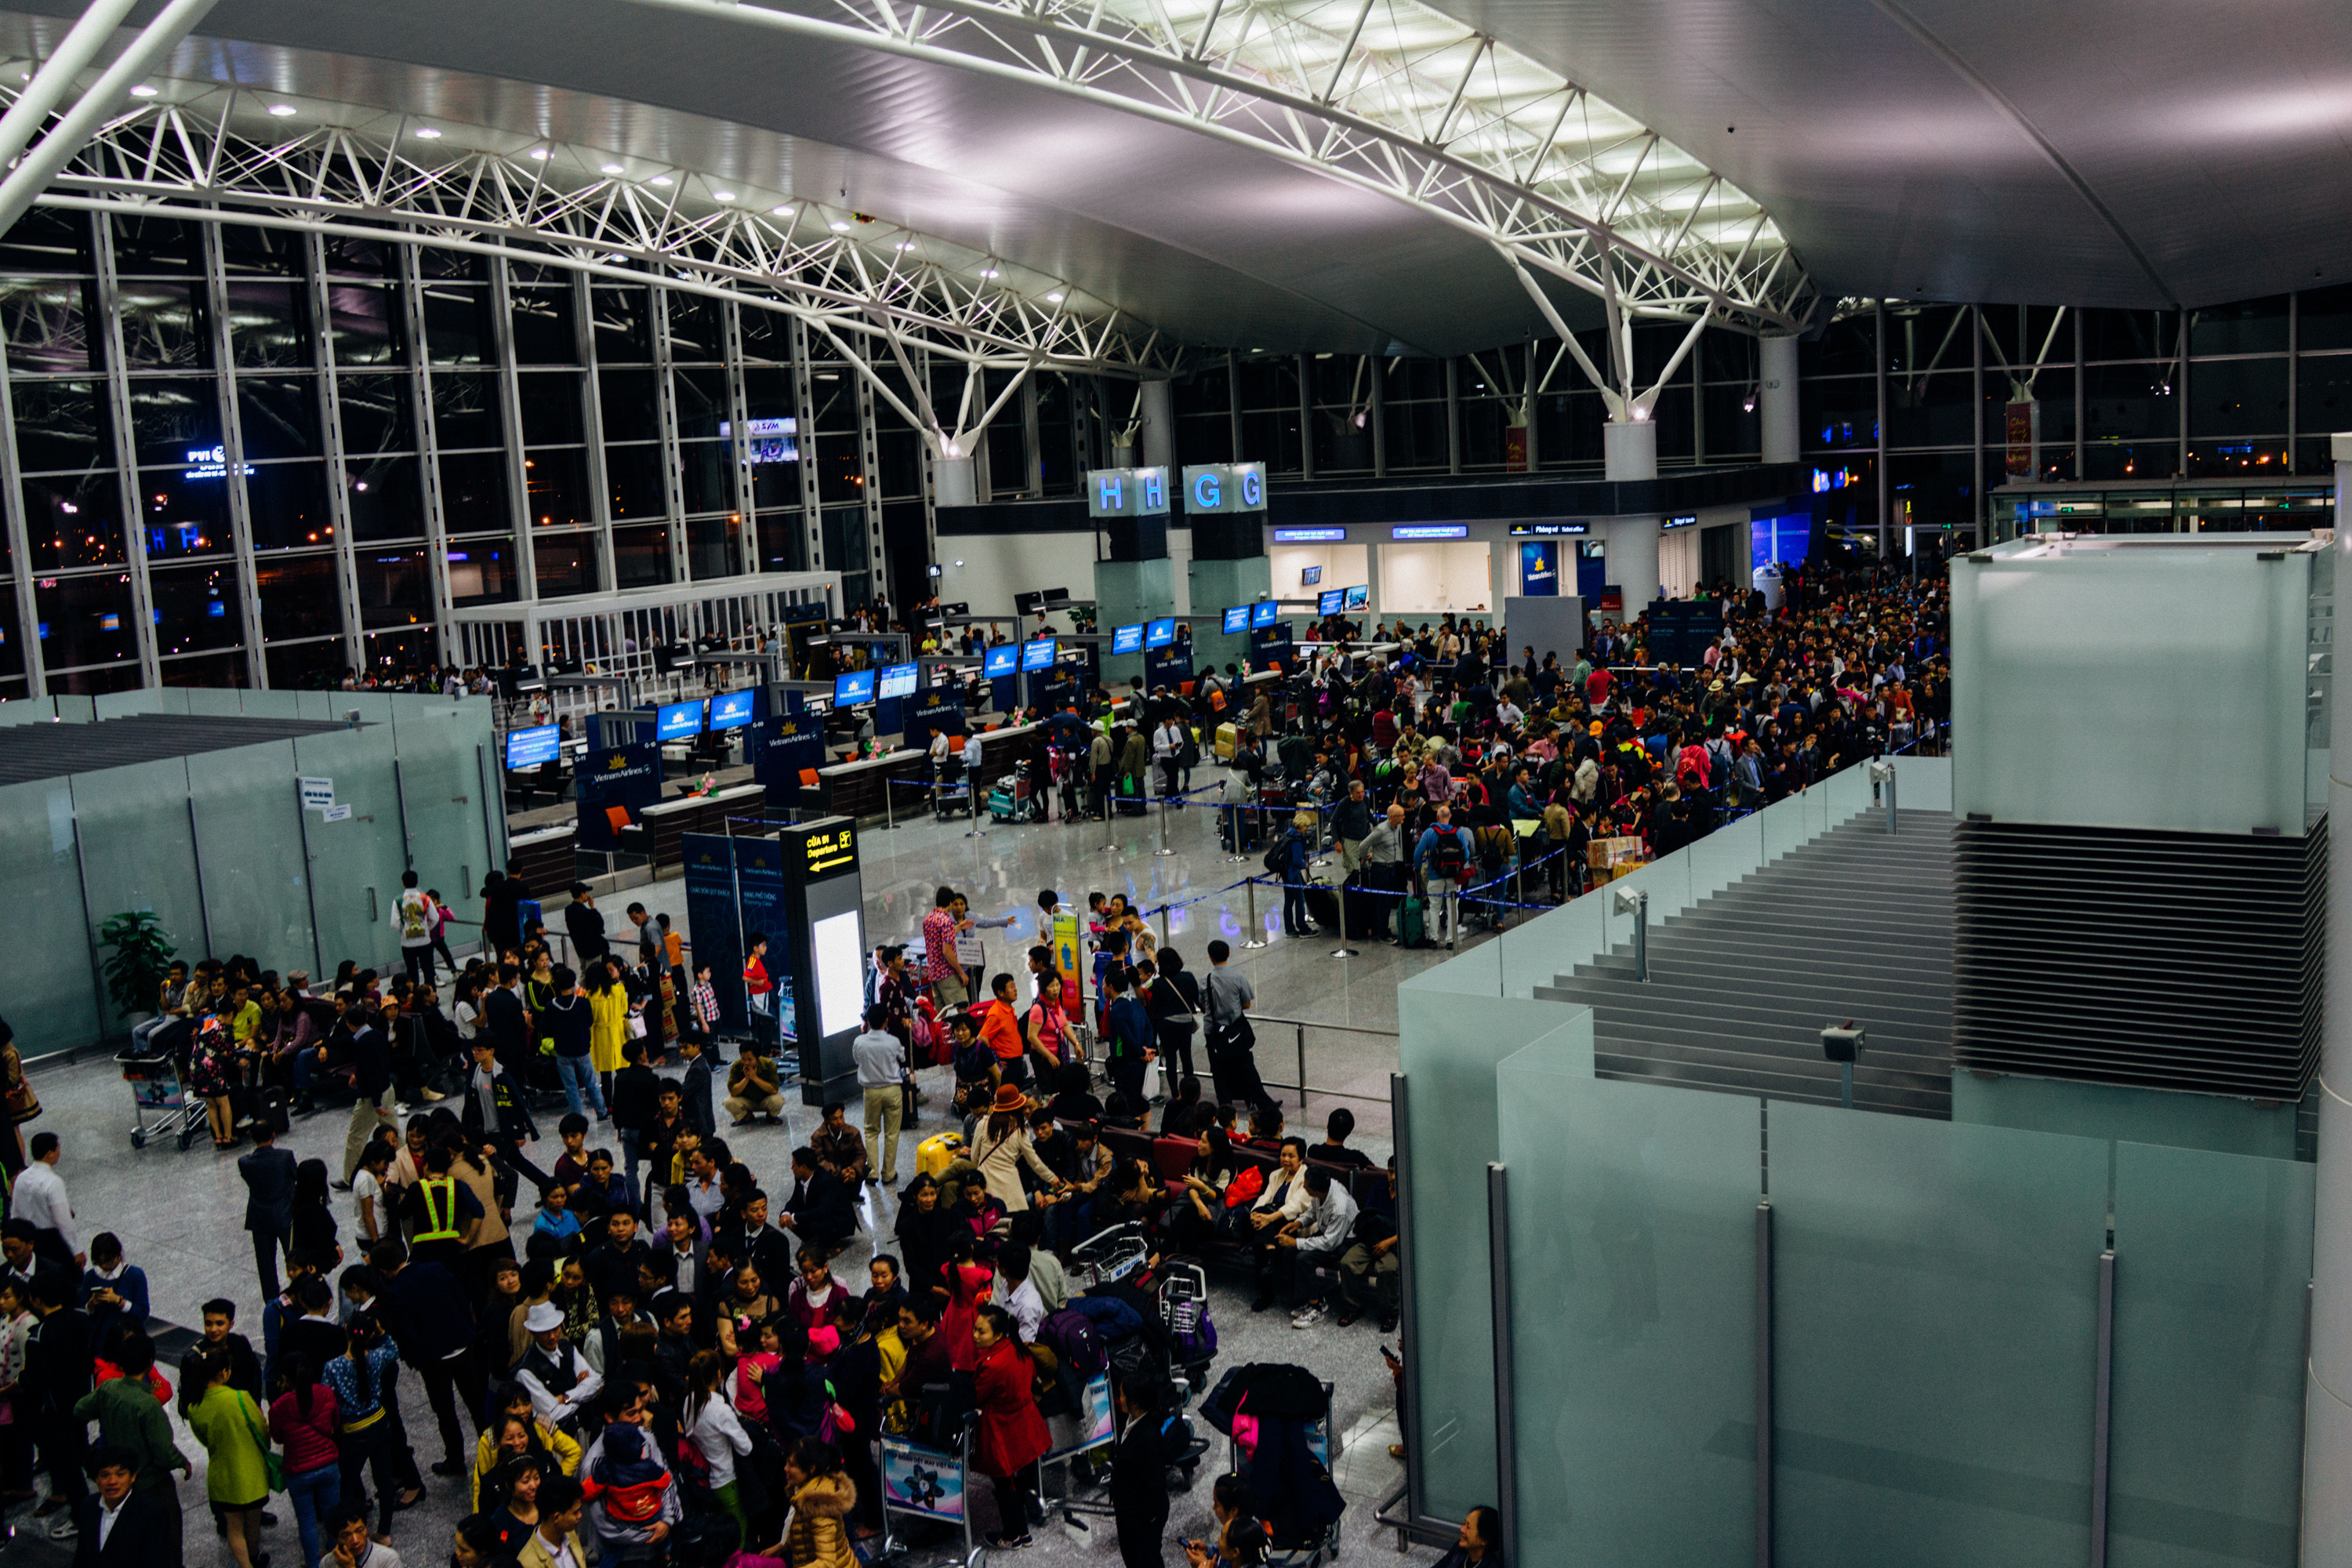 ハノイ ノイバイ空港は混雑必至の面倒な空港